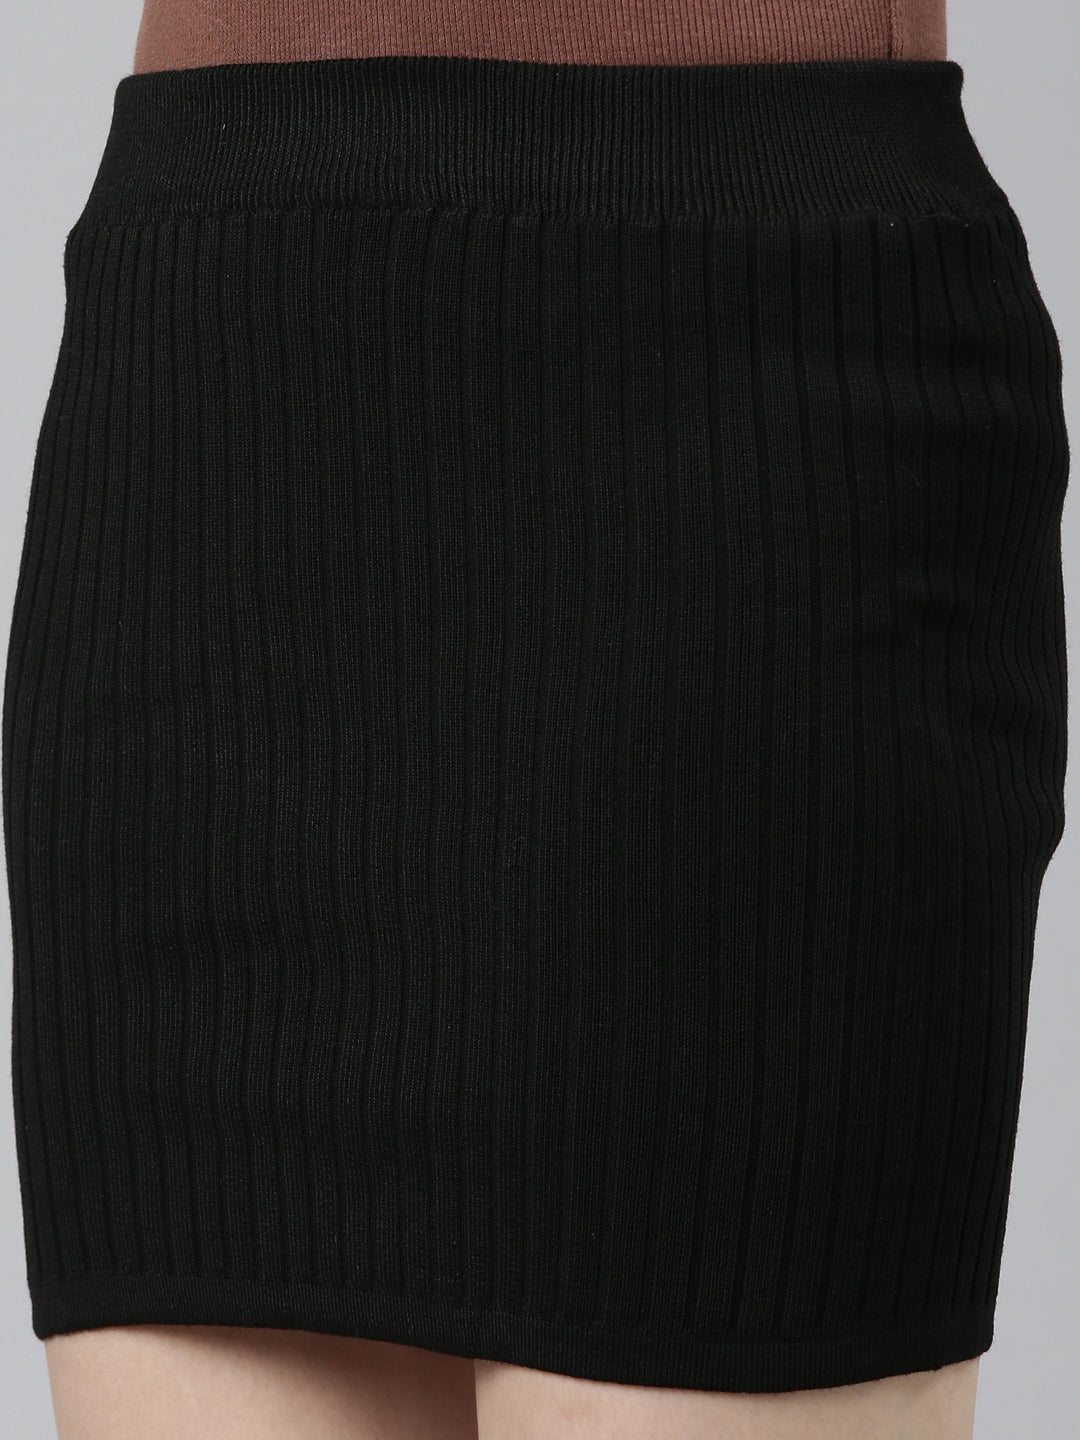 Women Black Solid Straight Skirt